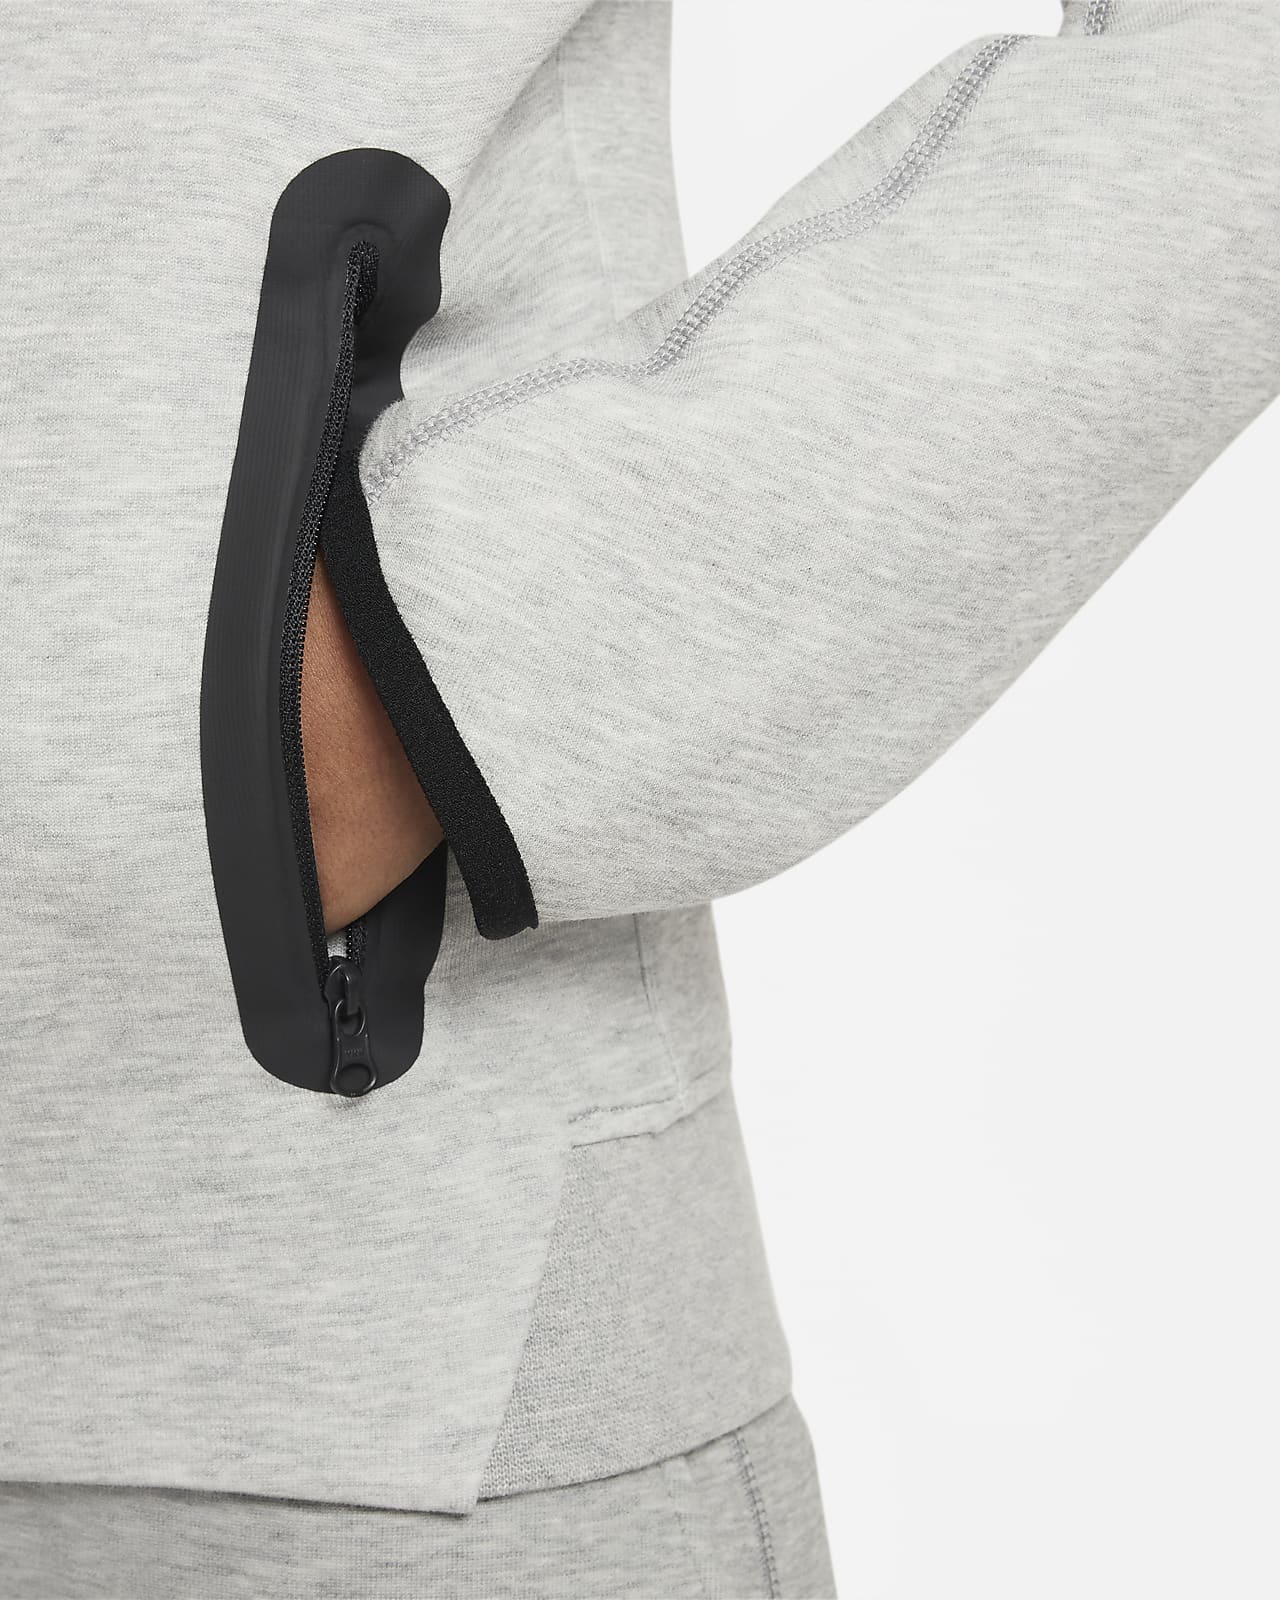 Kids Nike Sportswear Tech Fleece Full-zip Hoodie - Black/Dark Grey  Heather/White - SoccerPro